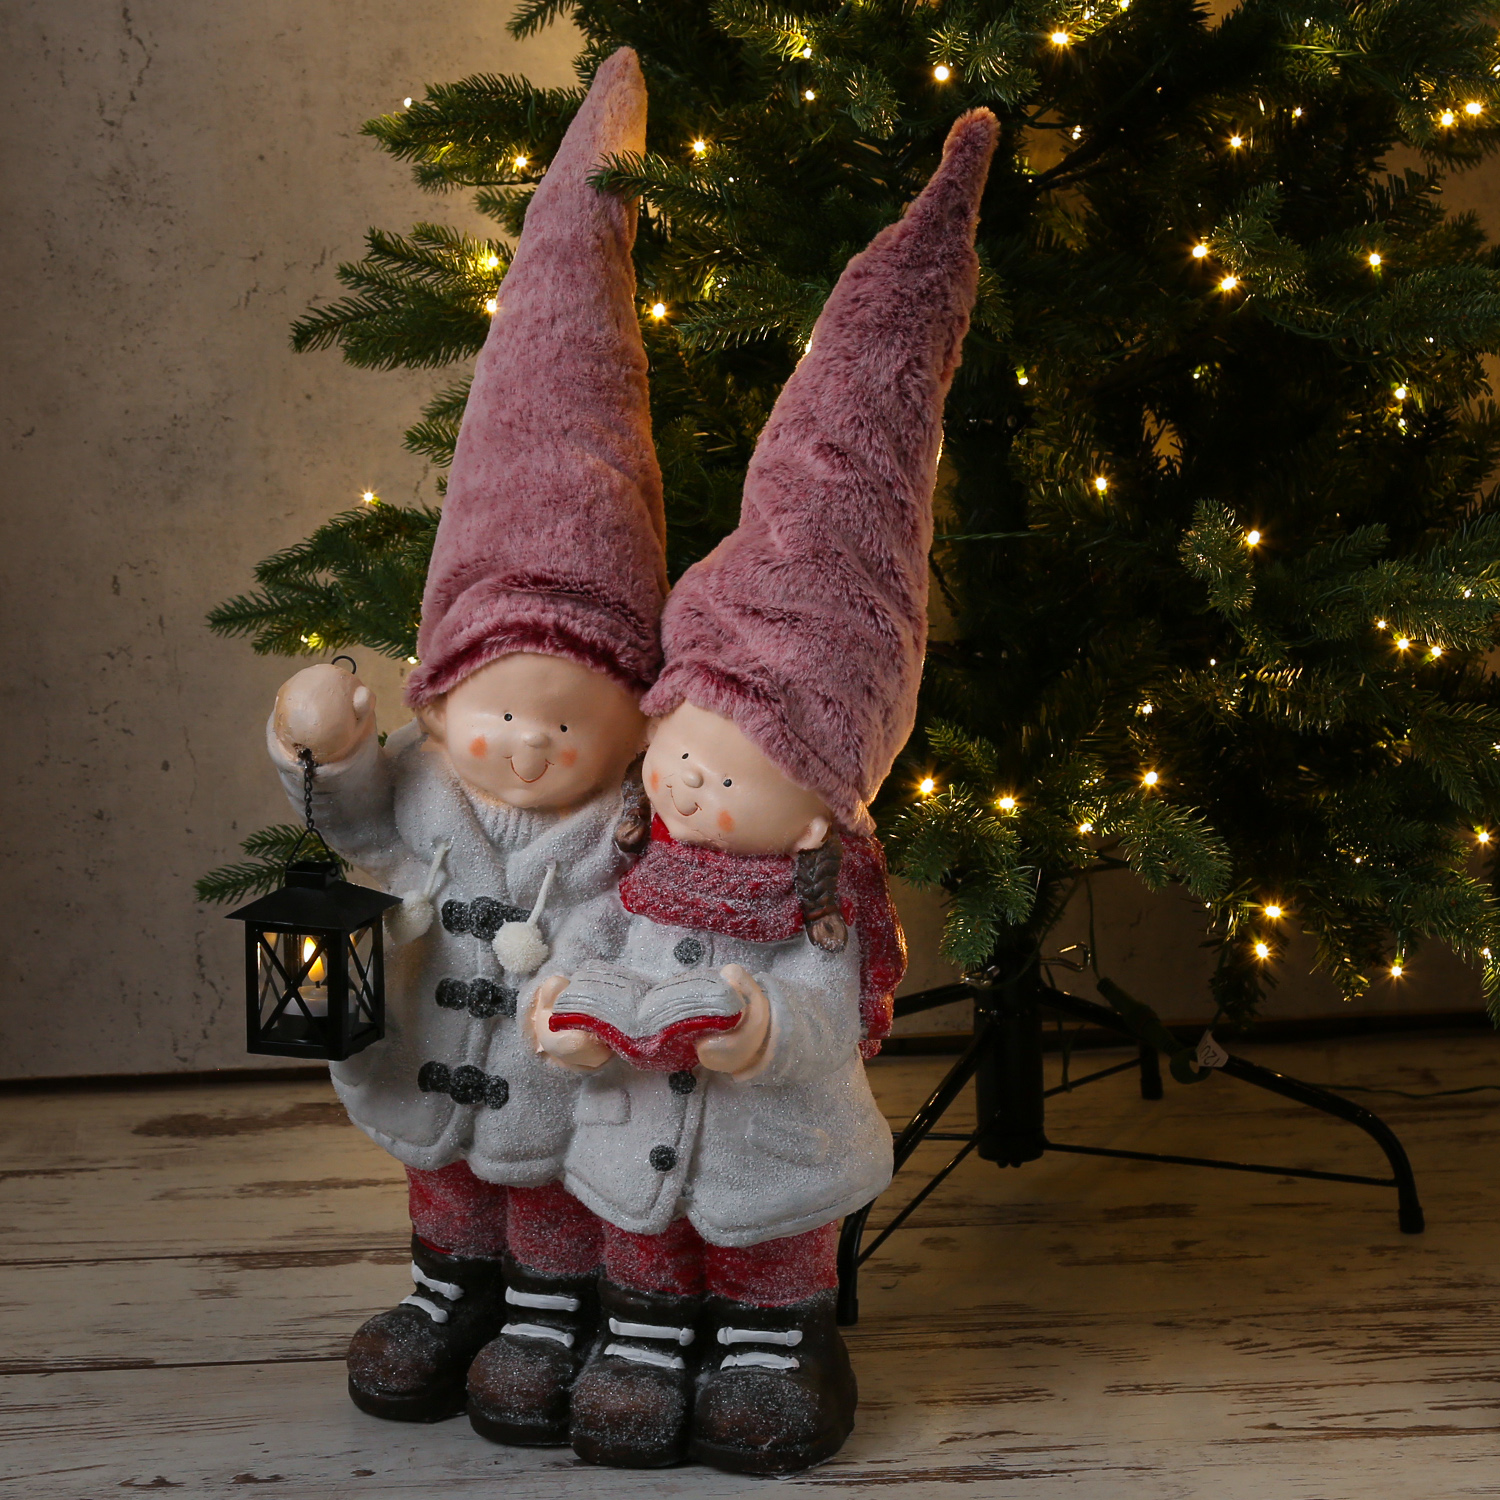 Wackelfiguren, Weihnachtliche Figuren - Gnome, Wichtel und Tiere, Weihnachtsdeko